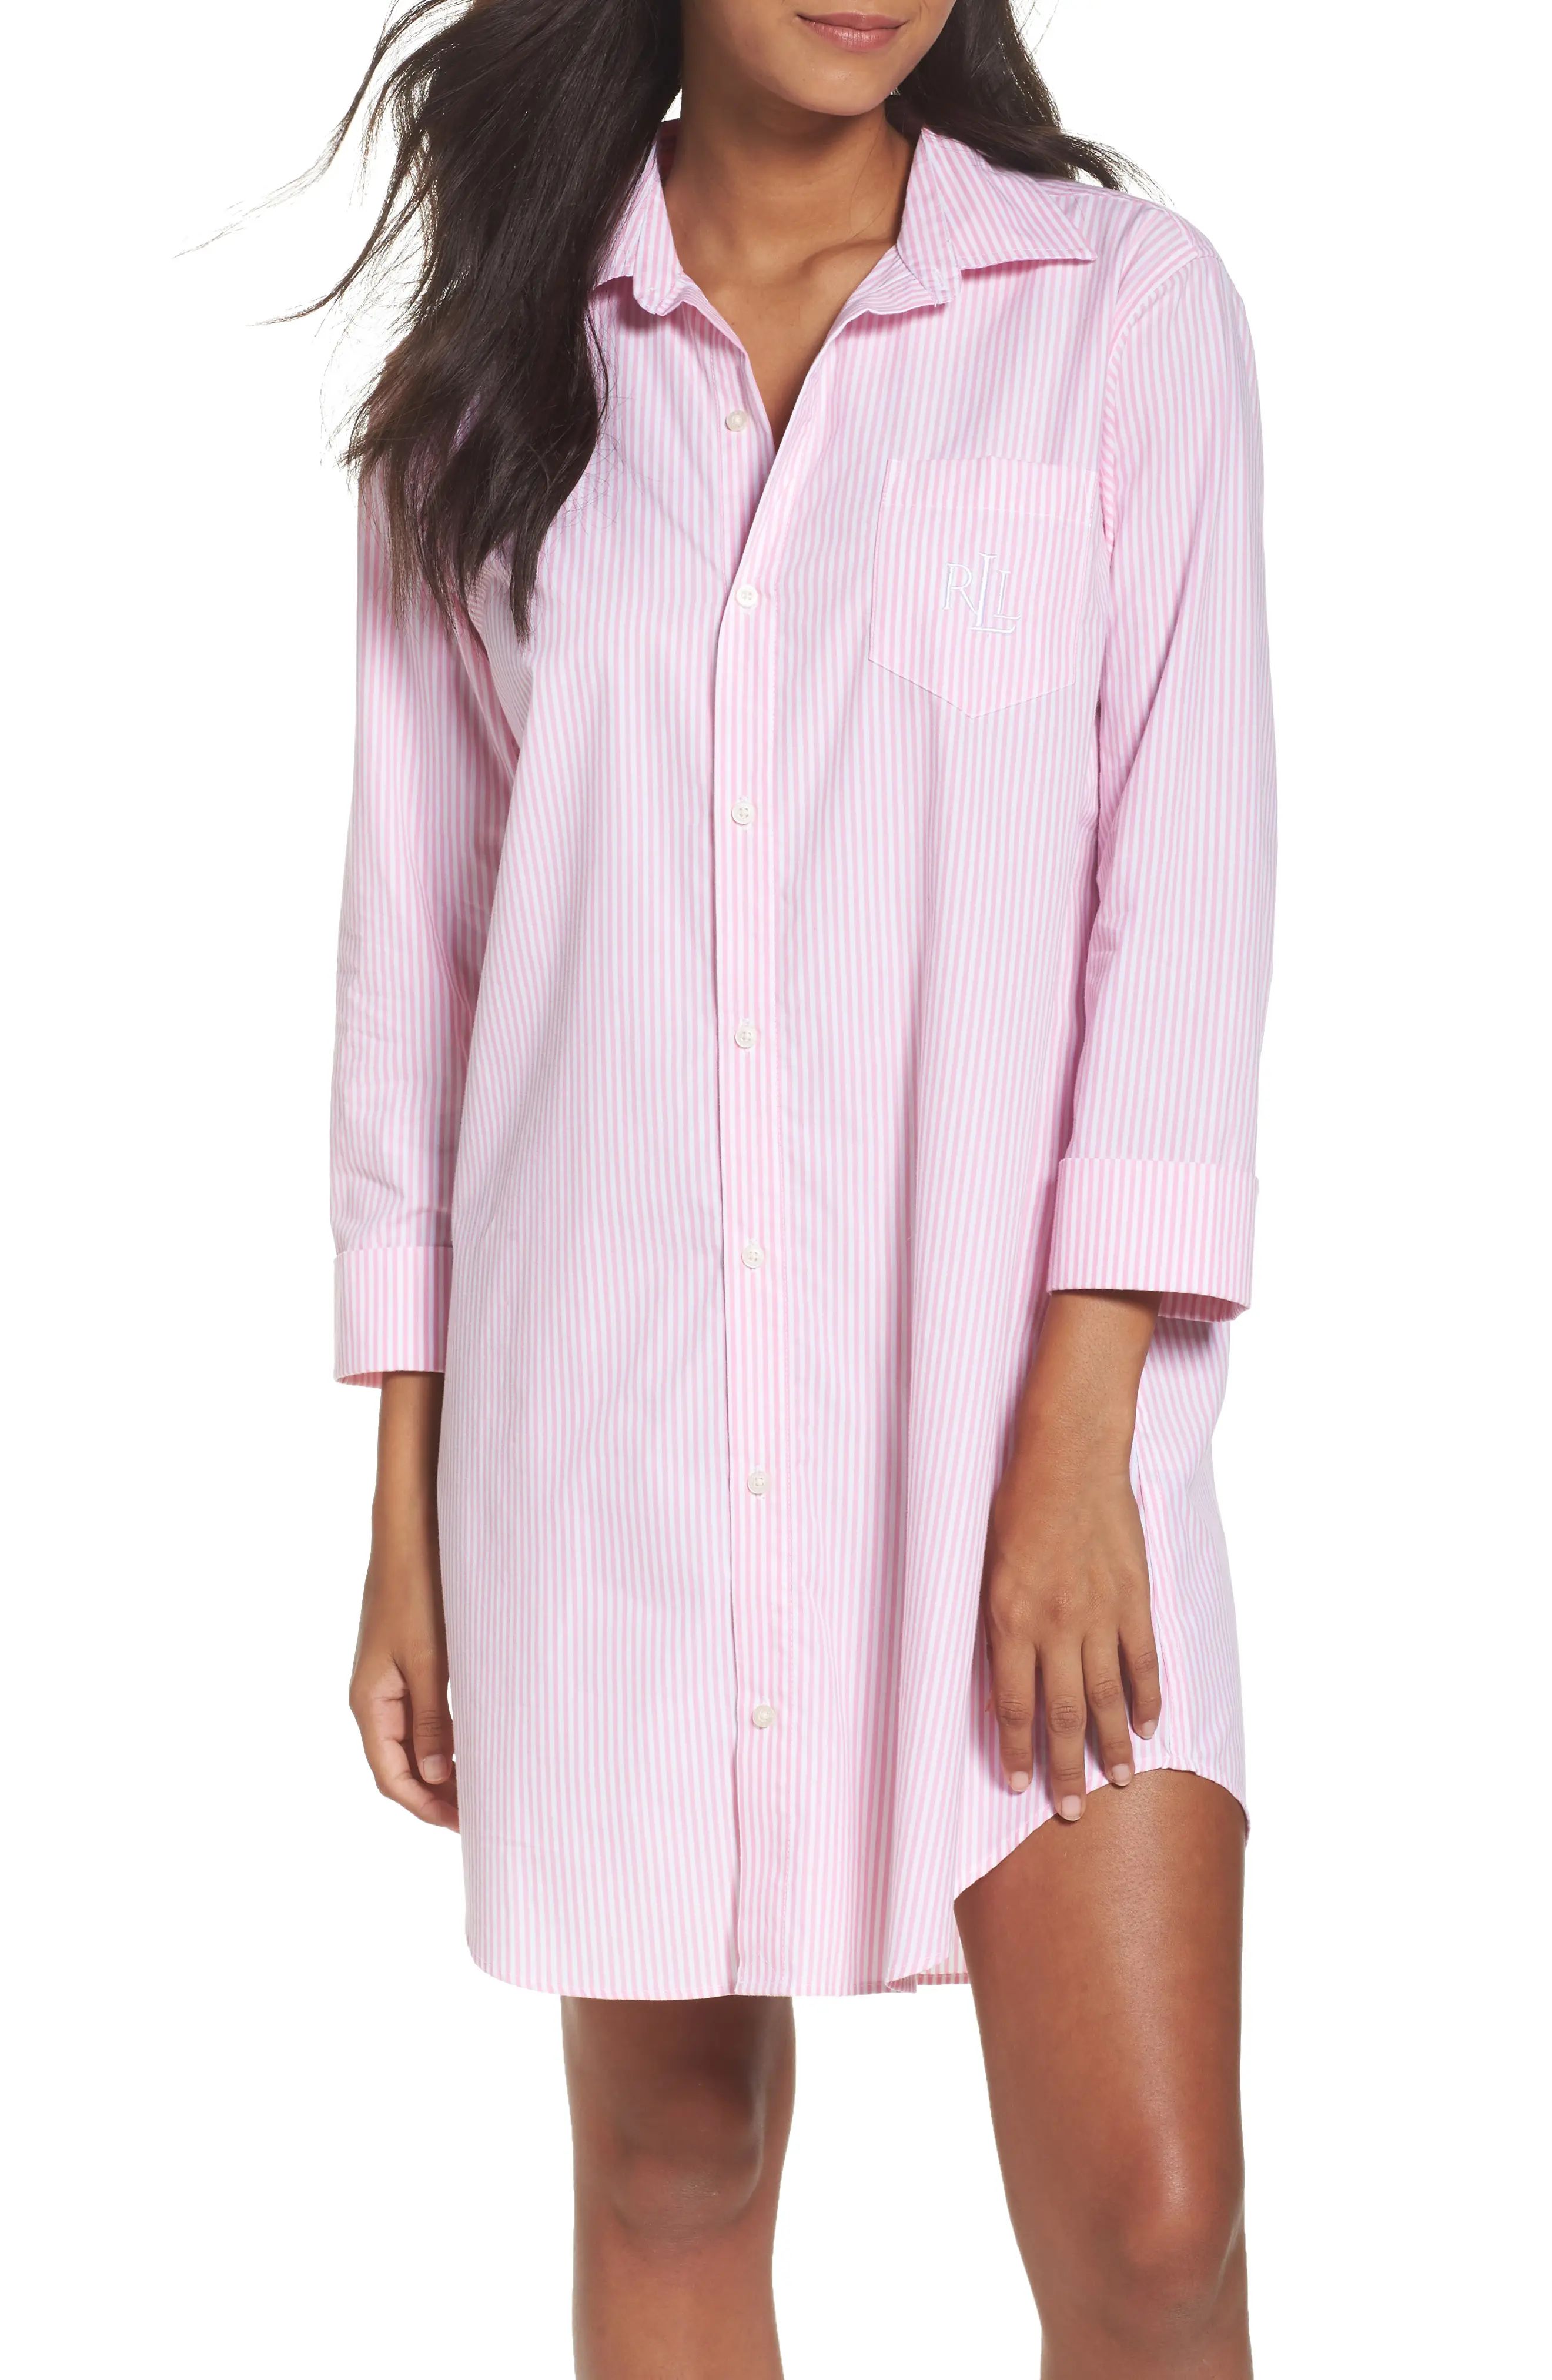 Lauren Ralph Lauren Cotton Poplin Sleep Shirt in Stripe Lagoon Pink/White at Nordstrom, Size X-Small | Nordstrom